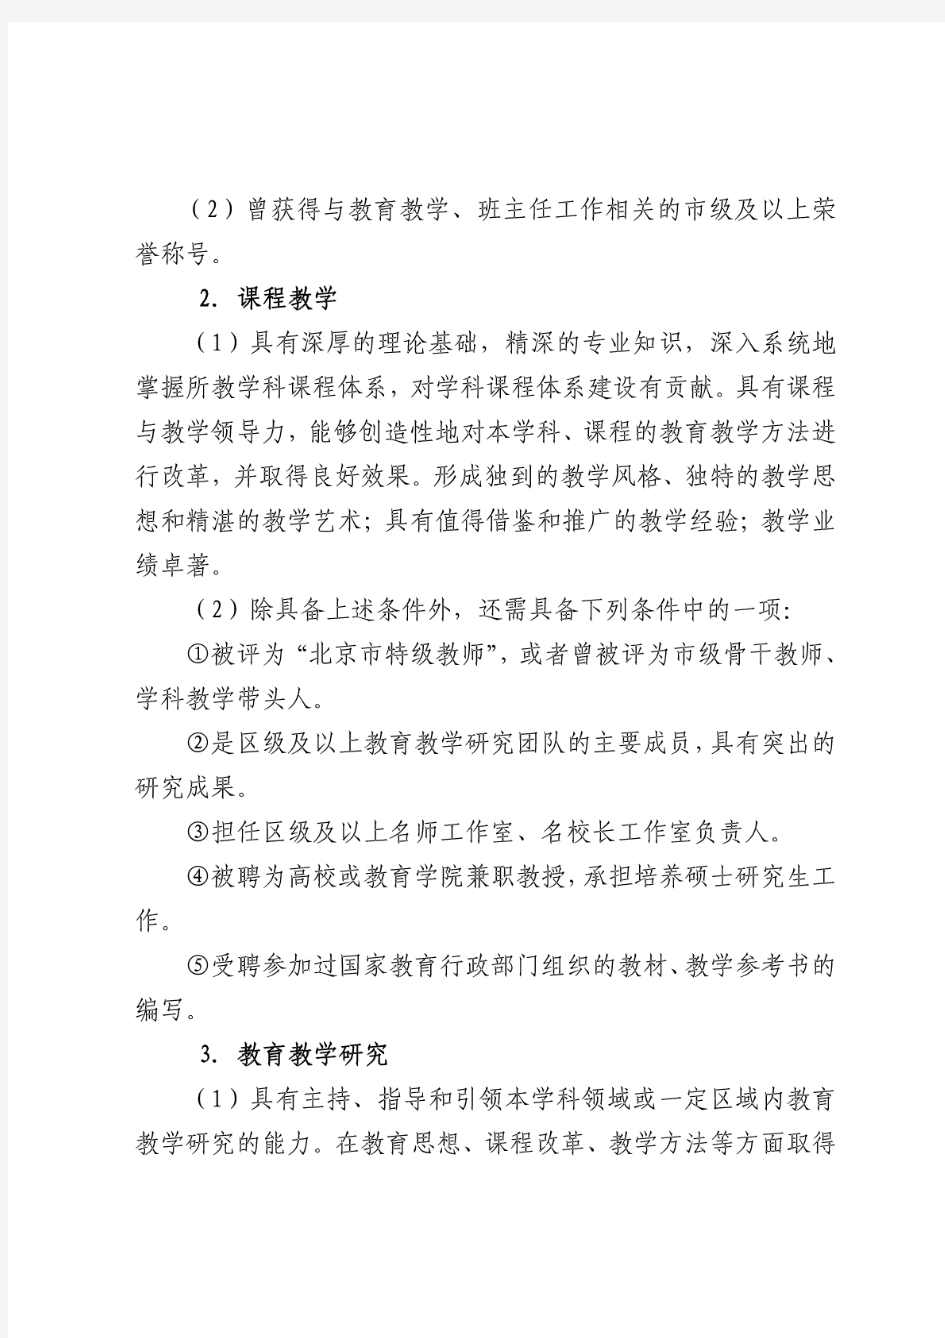 北京市中小学教师职称(职务)水平评价试行标准及条件